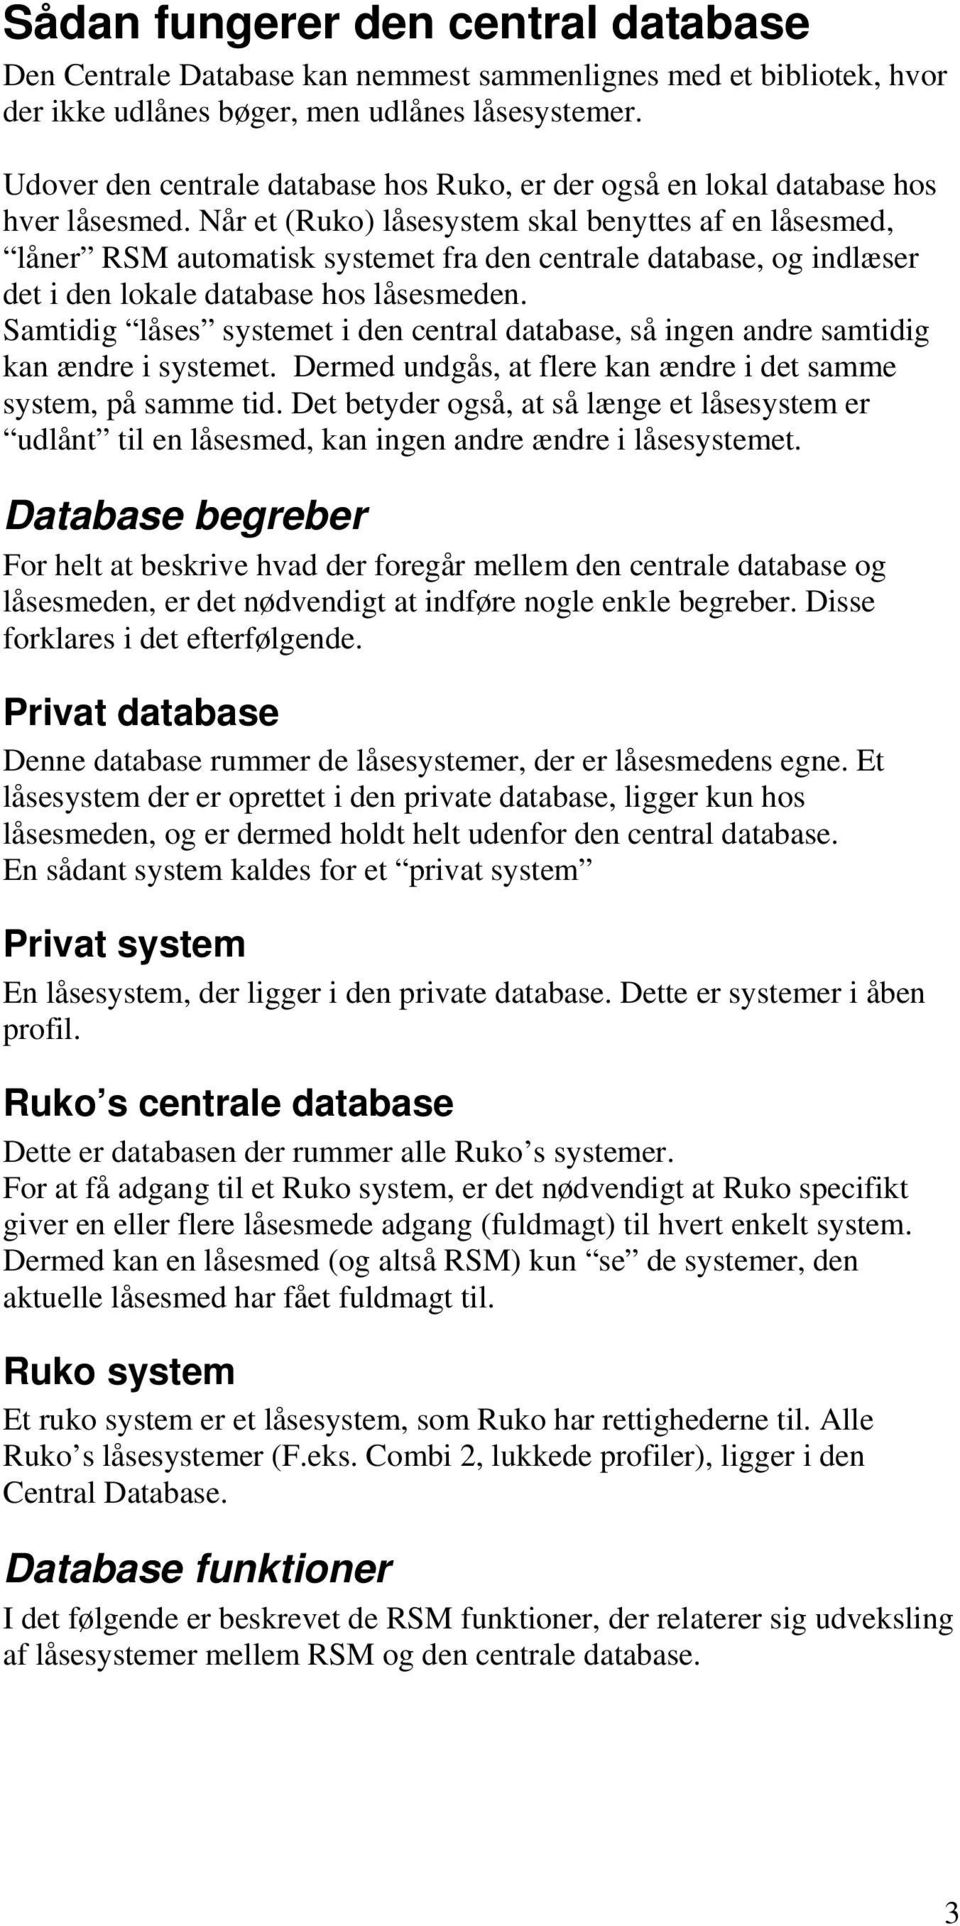 Når et (Ruko) låsesystem skal benyttes af en låsesmed, låner RSM automatisk systemet fra den centrale database, og indlæser det i den lokale database hos låsesmeden.